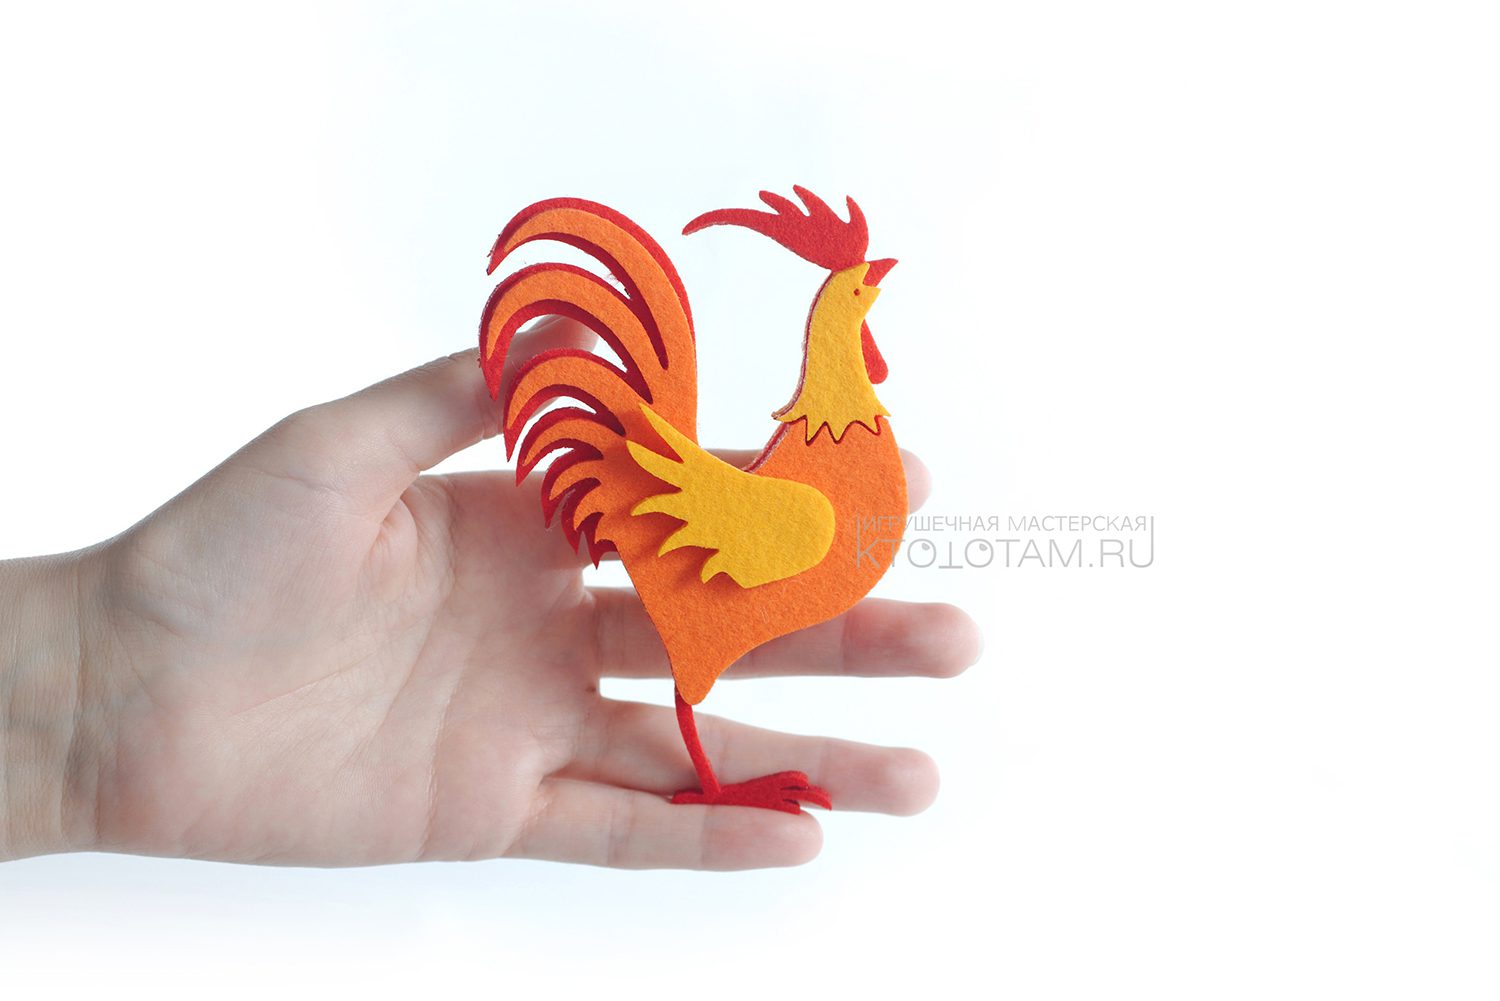 Петух многослойная игрушка из фетра — KTOTOTAM.ru — игрушечная мастерская,  корпоративные персонажи и сувенирная продукция производство на заказ